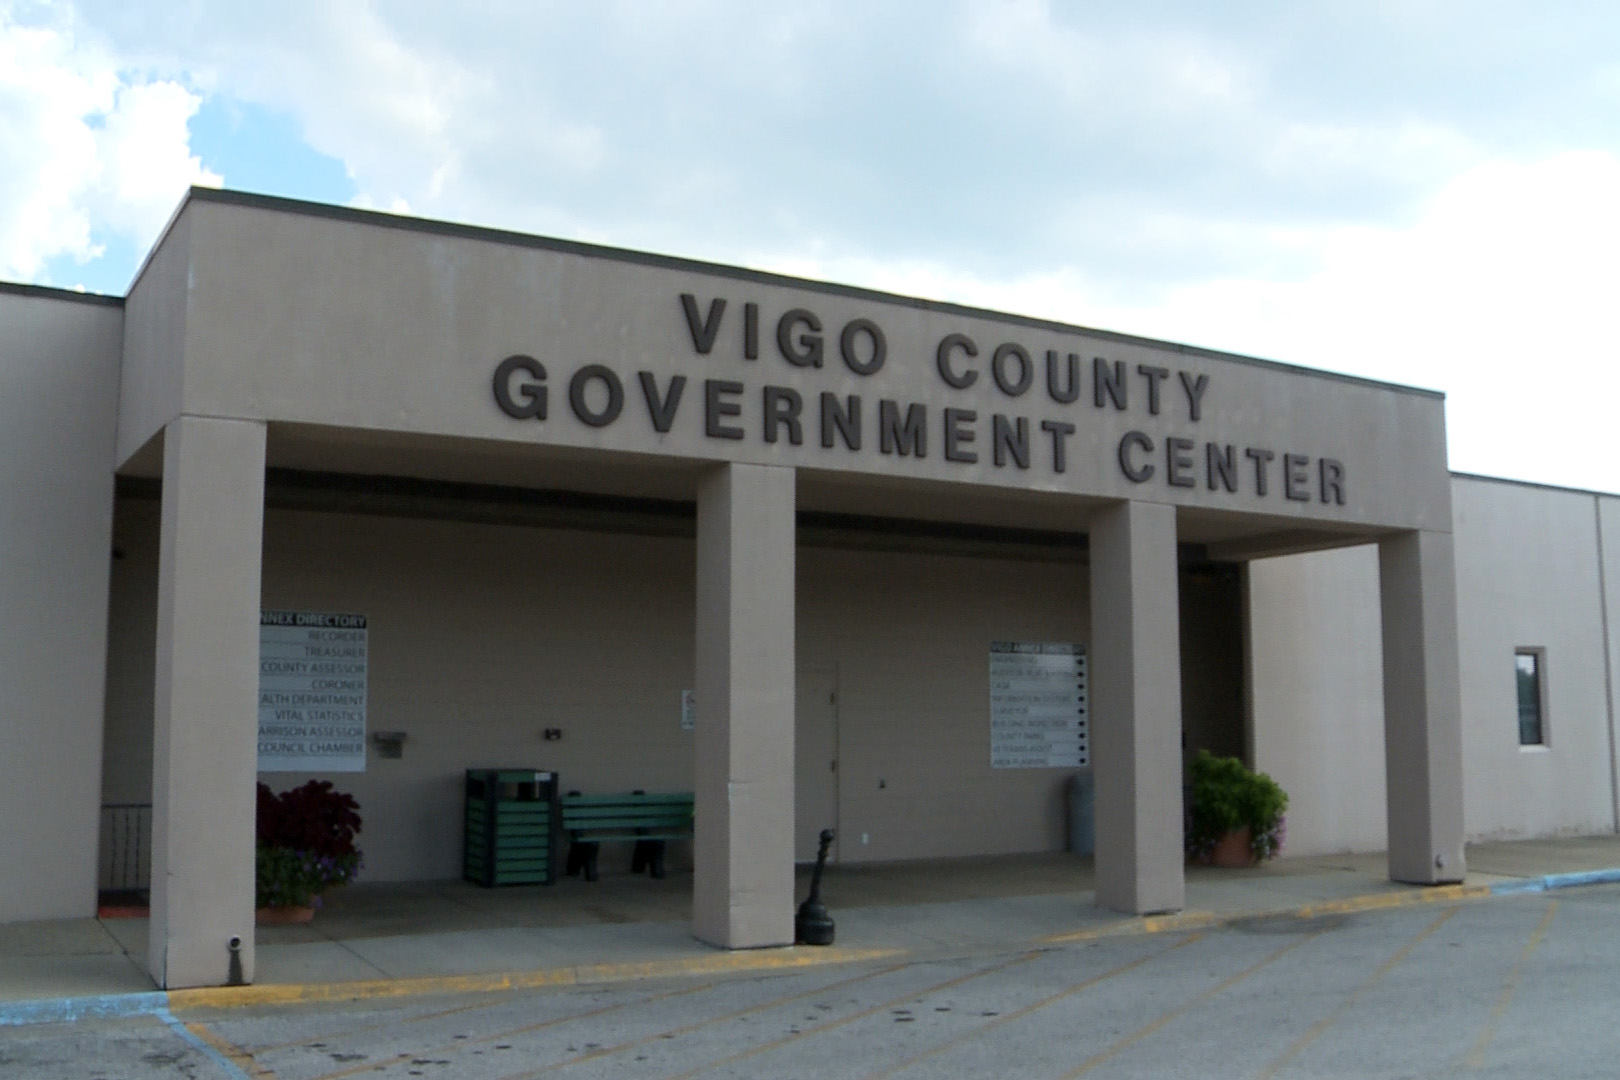 Vigo County Government Center